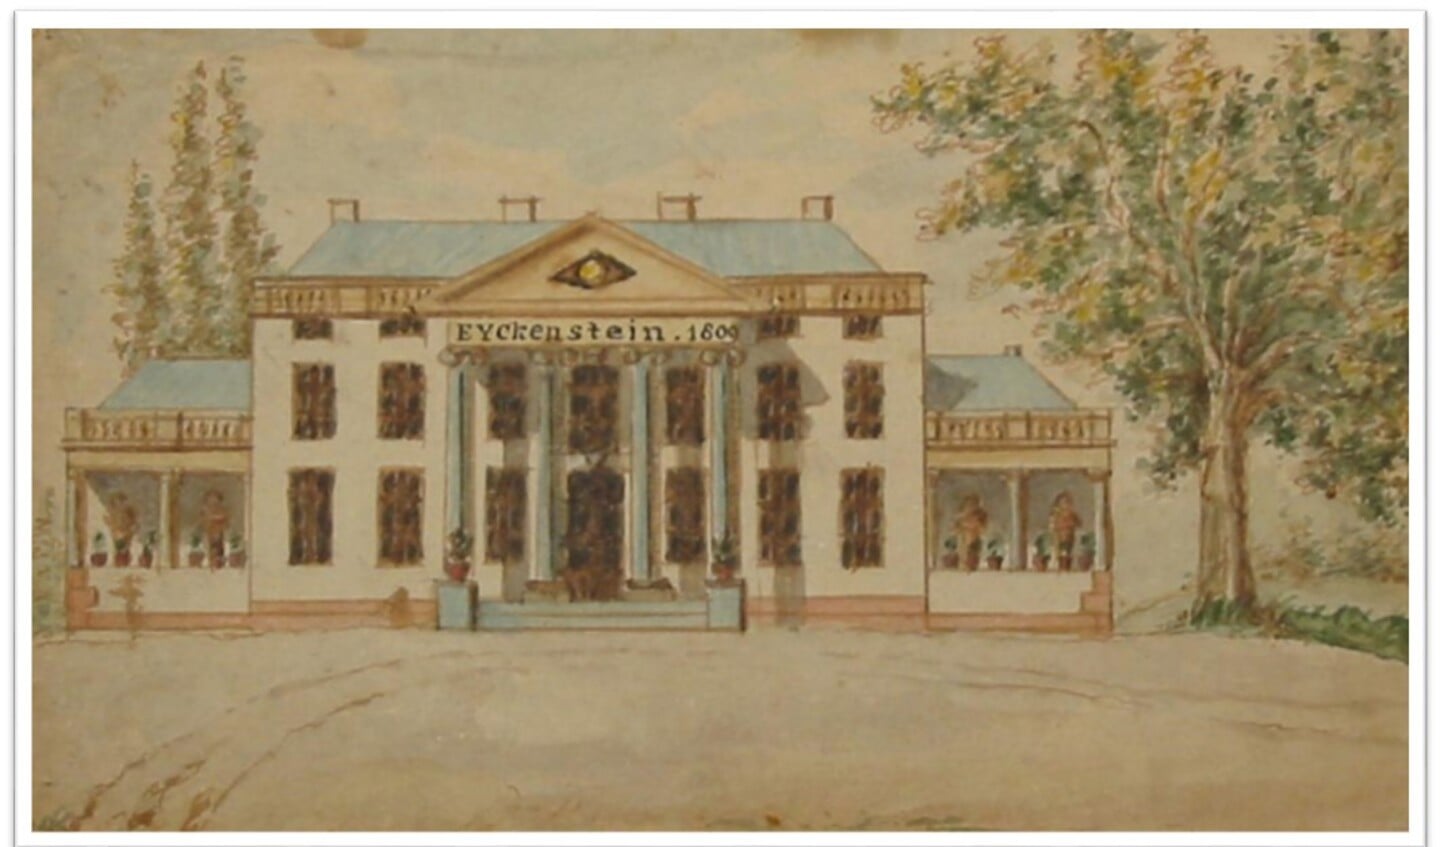 Het in 1809 gebouwde nieuwe Eyckenstein.